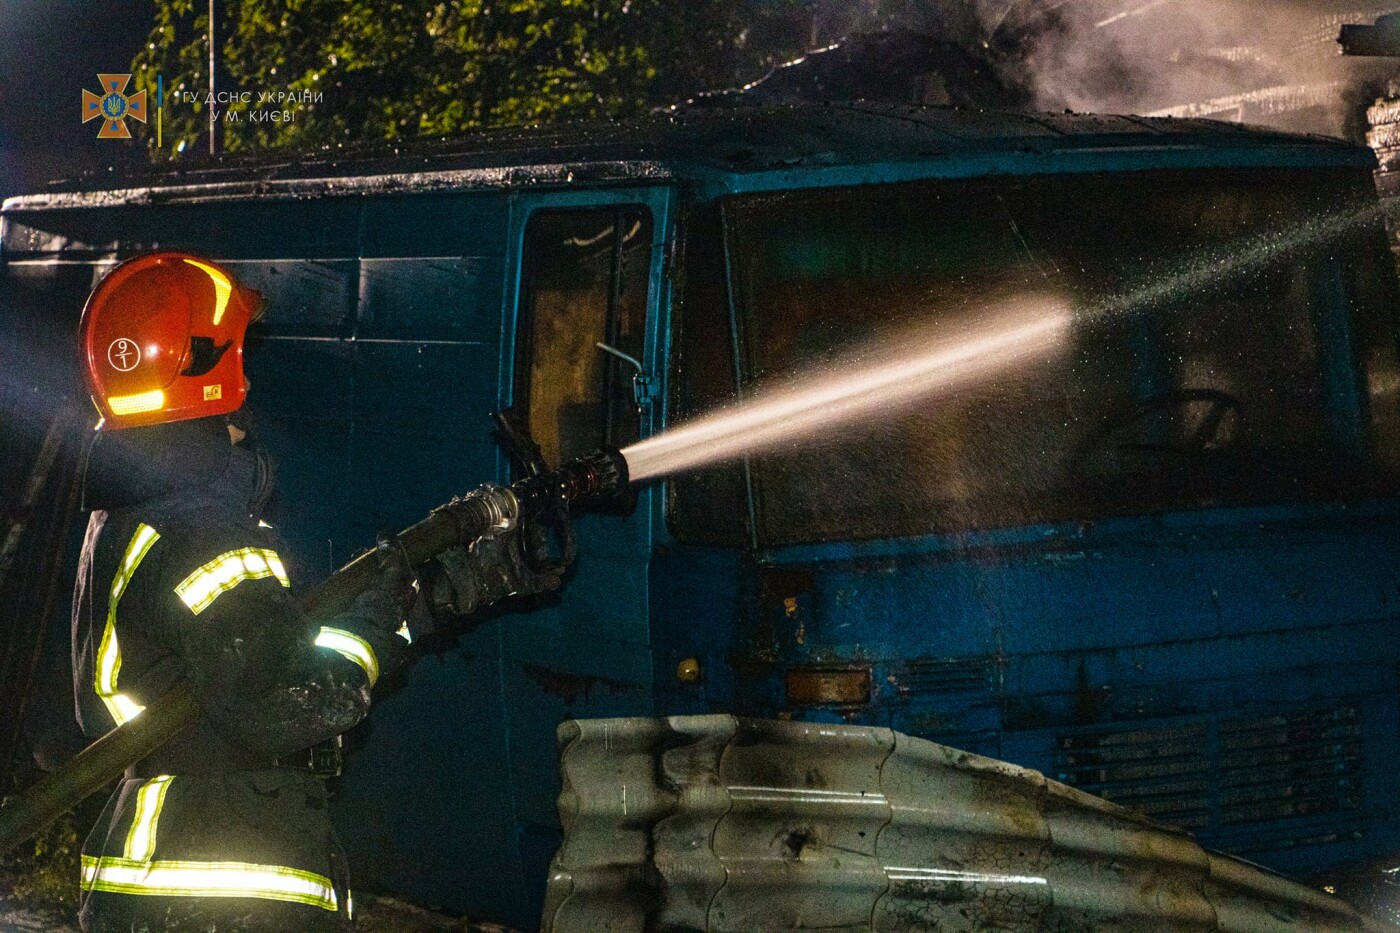 В Святошинском районе Киева сгорел дом и 3 автомобиля: мужчина госпитализирован в тяжелом состоянии, - ФОТО